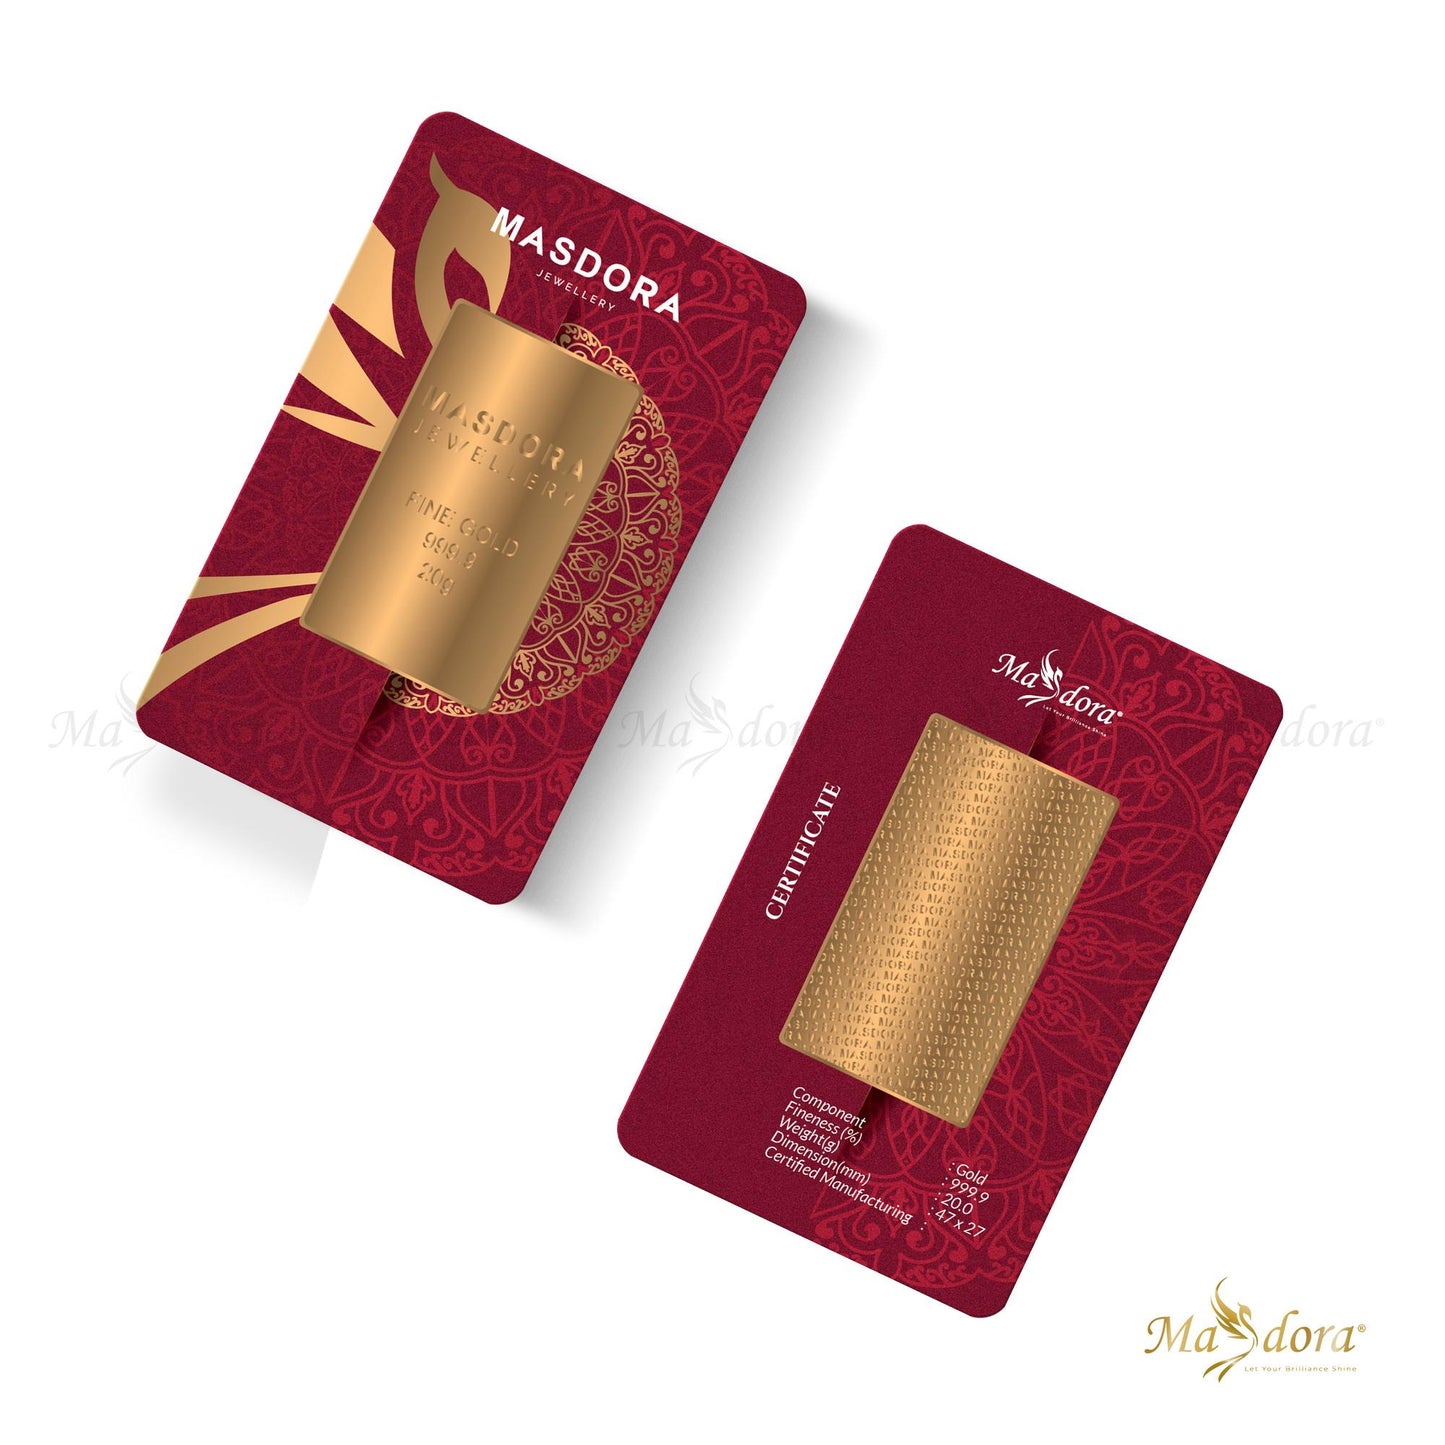 Masdora Signature Gold Bullion Bar 20g (Emas 999.9)